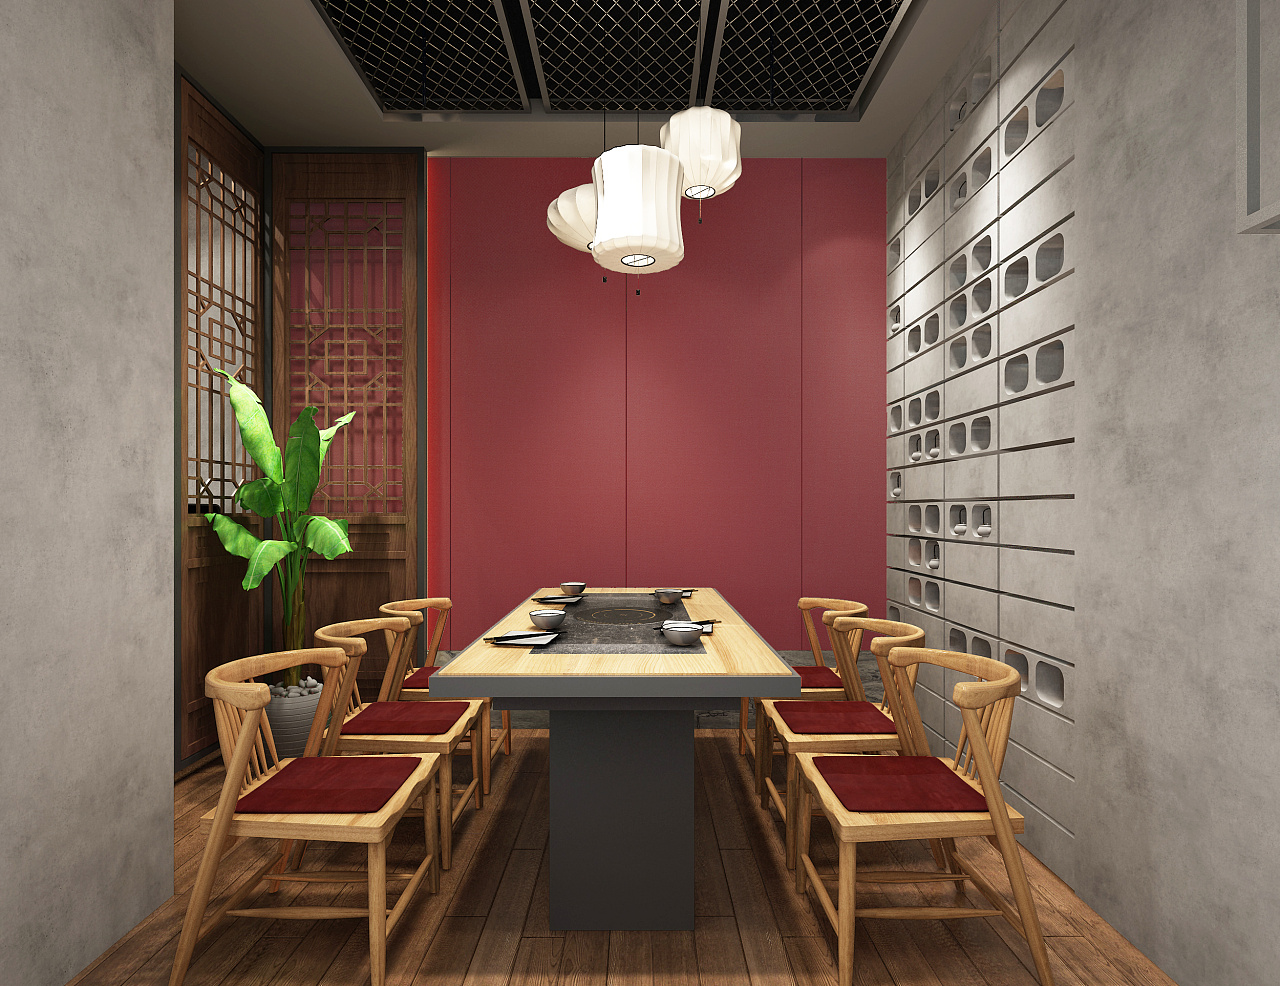 典雅中式风两居餐厅处屏风装修效果图- 中国风